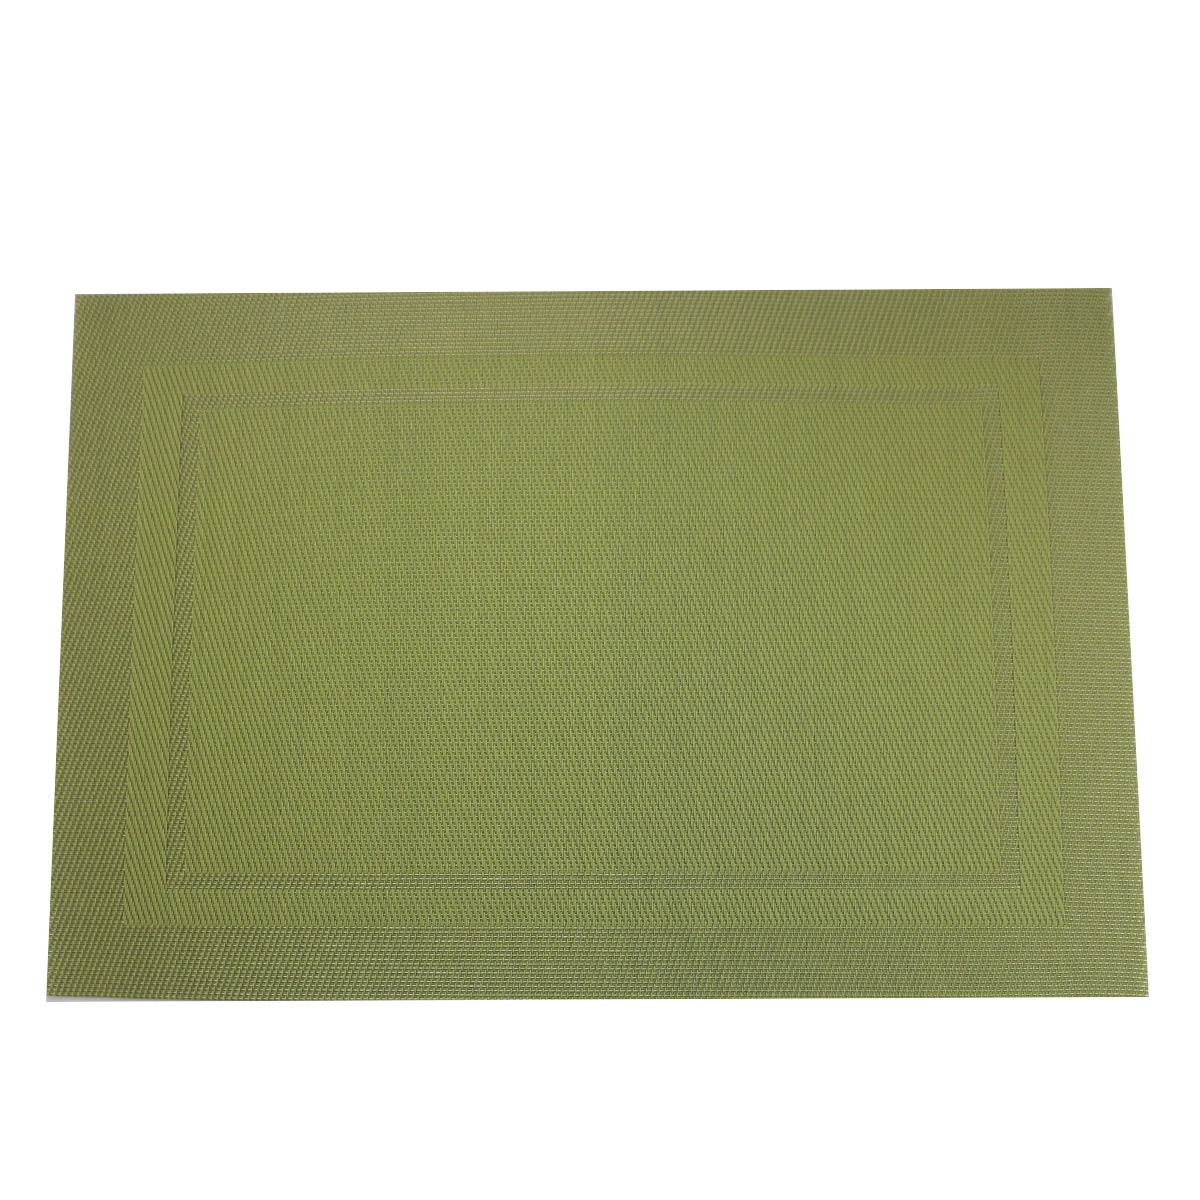 JANKNG 6 шт. ПВХ кухонные столовые салфетки для настольного коврика водостойкий коврик для стола индивидуальные коврики для чашек - Цвет: Checkered green